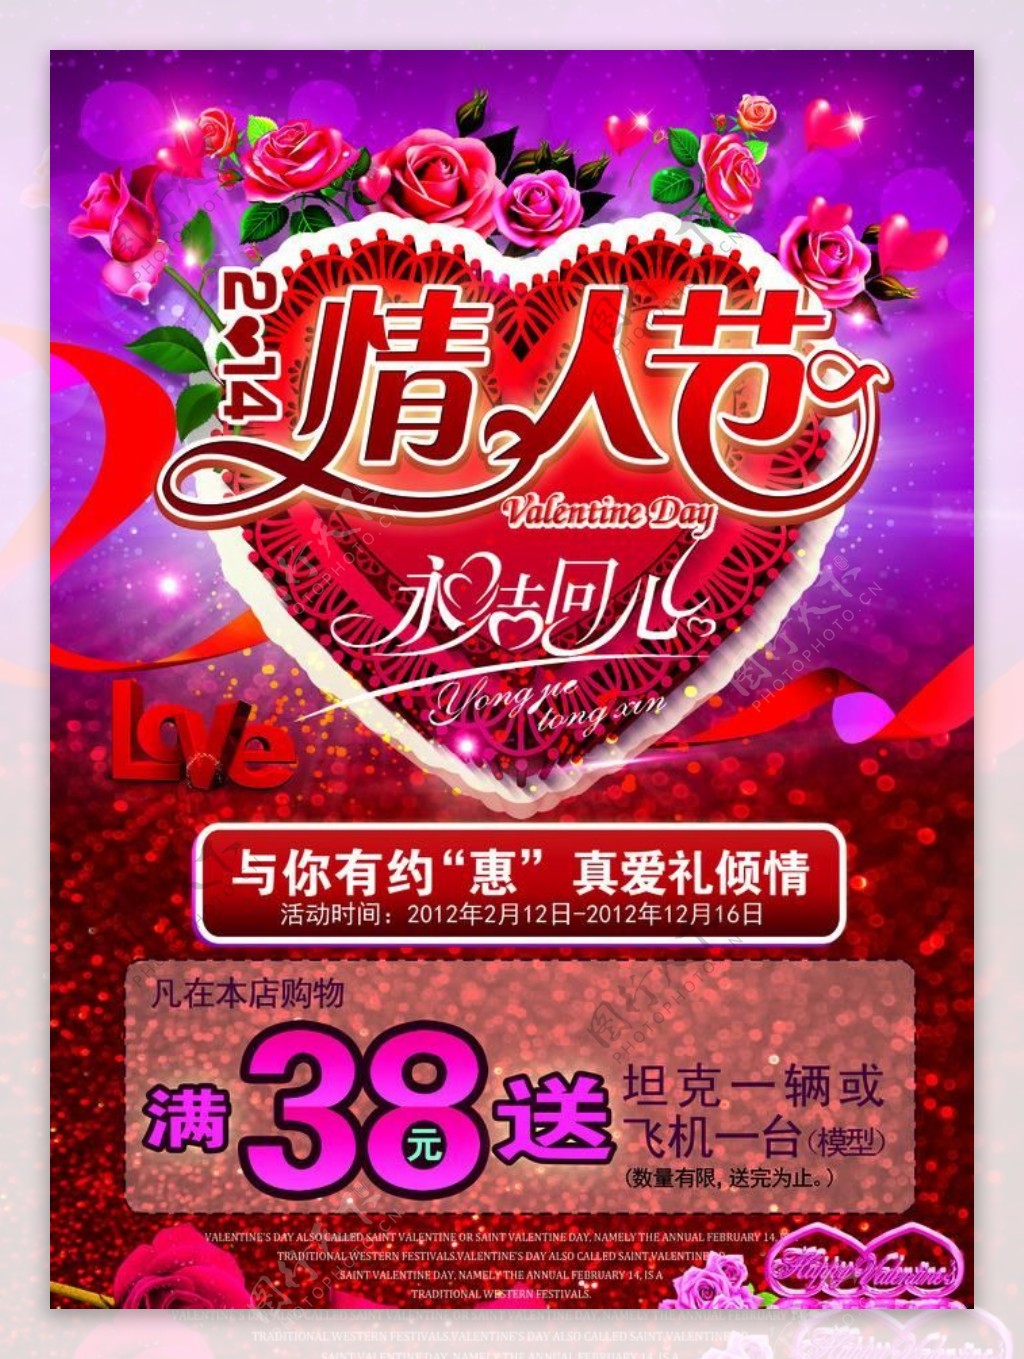 情人节婚庆宣传促销海报设计PSD素材